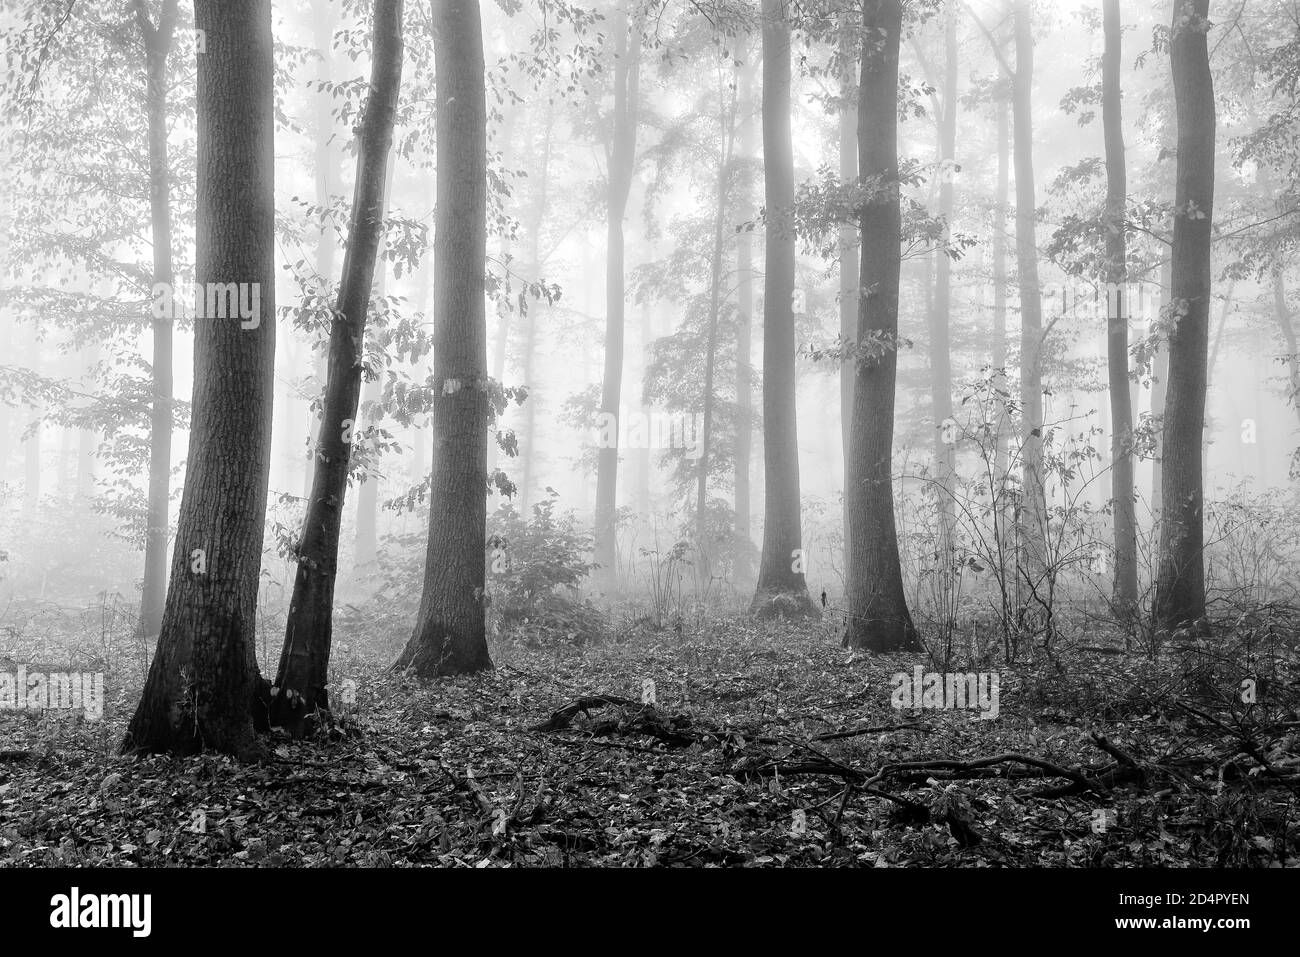 Forêt à feuilles caduques avec brouillard dense en automne, noir et blanc, près de Freyburg, Allemagne ( Sachsen-Anhalt) Banque D'Images